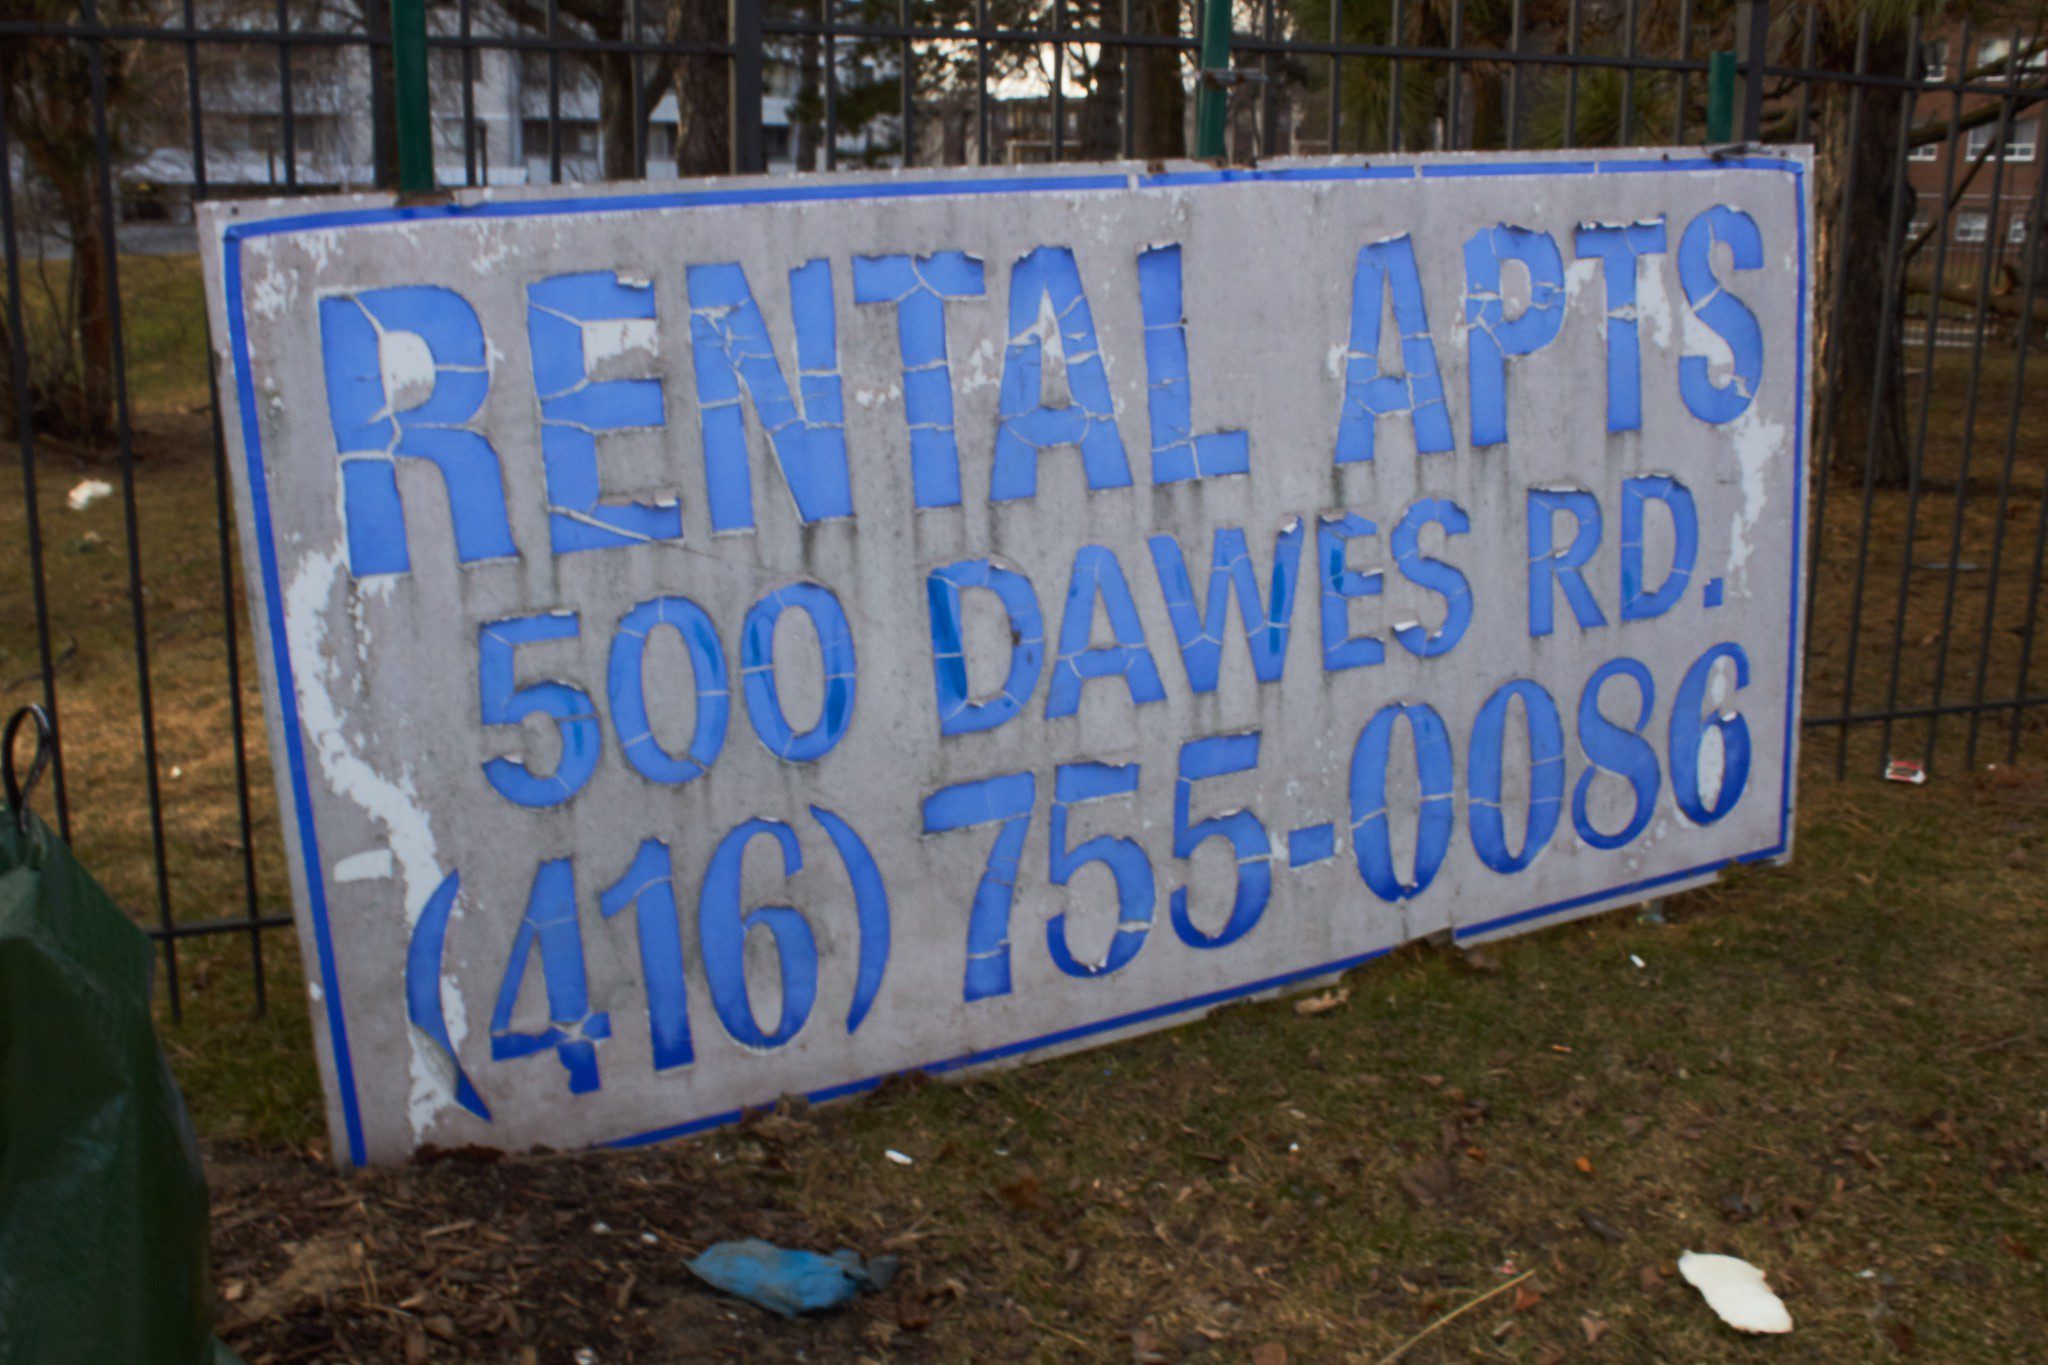 Rotting sign advertising rentals at 500 Dawes